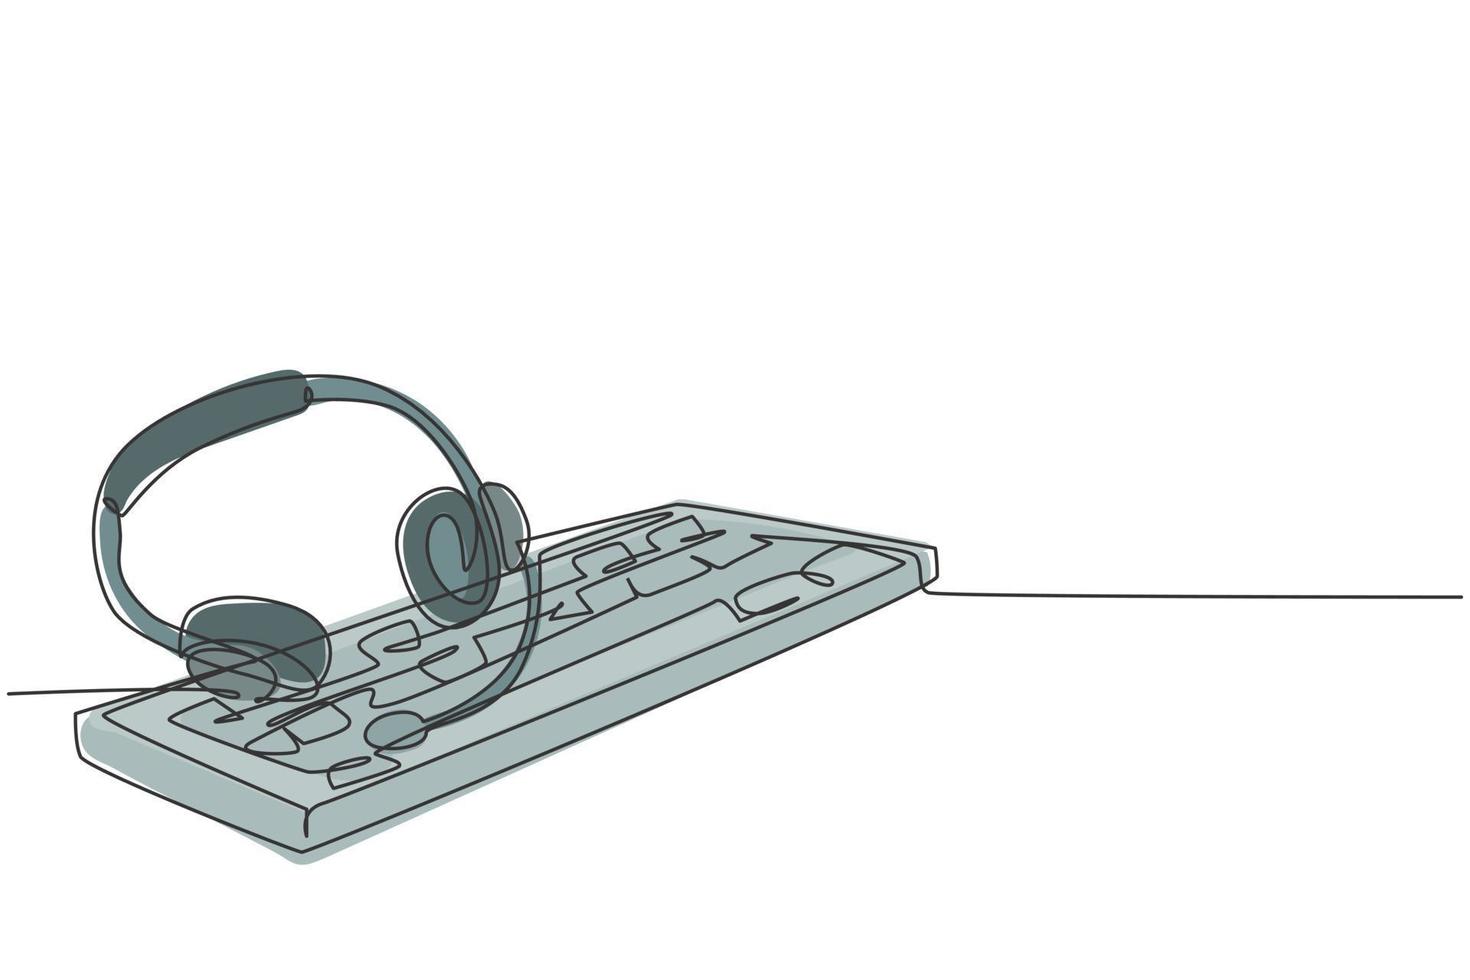 en enda radritning av hörlurar med mikrofon och tangentbord på skrivbordet som verktyg för kundtjänstvård. call center koncept kontinuerlig linje grafisk rita design vektor illustration